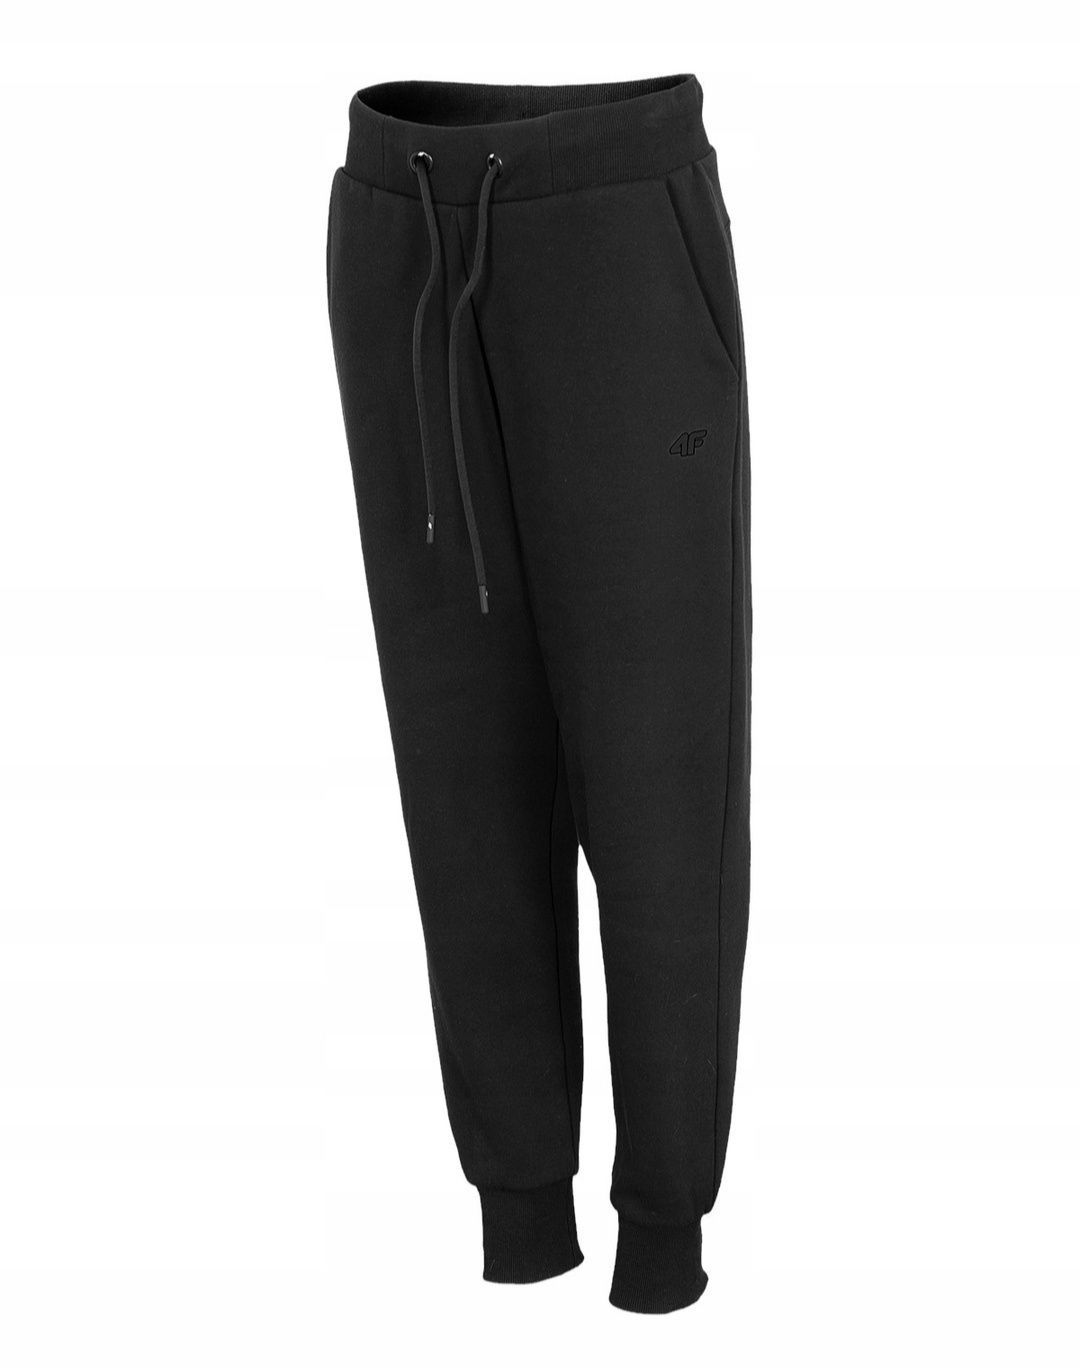 Czarne spodnie dresowe damskie 4f różne rozmiary i kolory